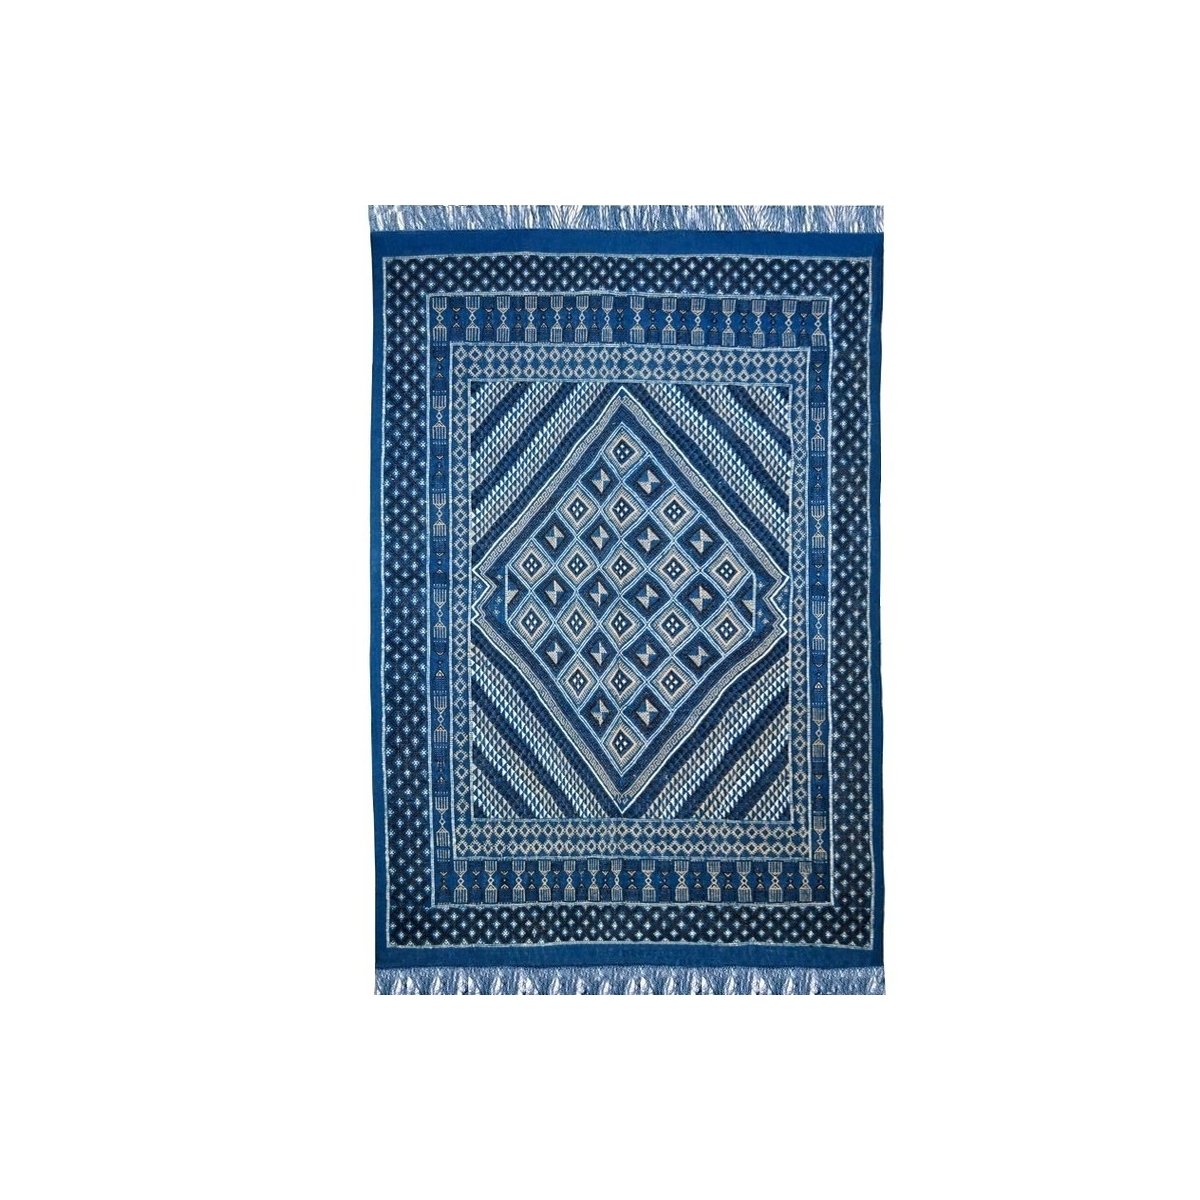 Berber carpet Large Rug Margoum Yamina 165x240 Blue (Handmade, Wool, Tunisia) Tunisian margoum rug from the city of Kairouan. Re